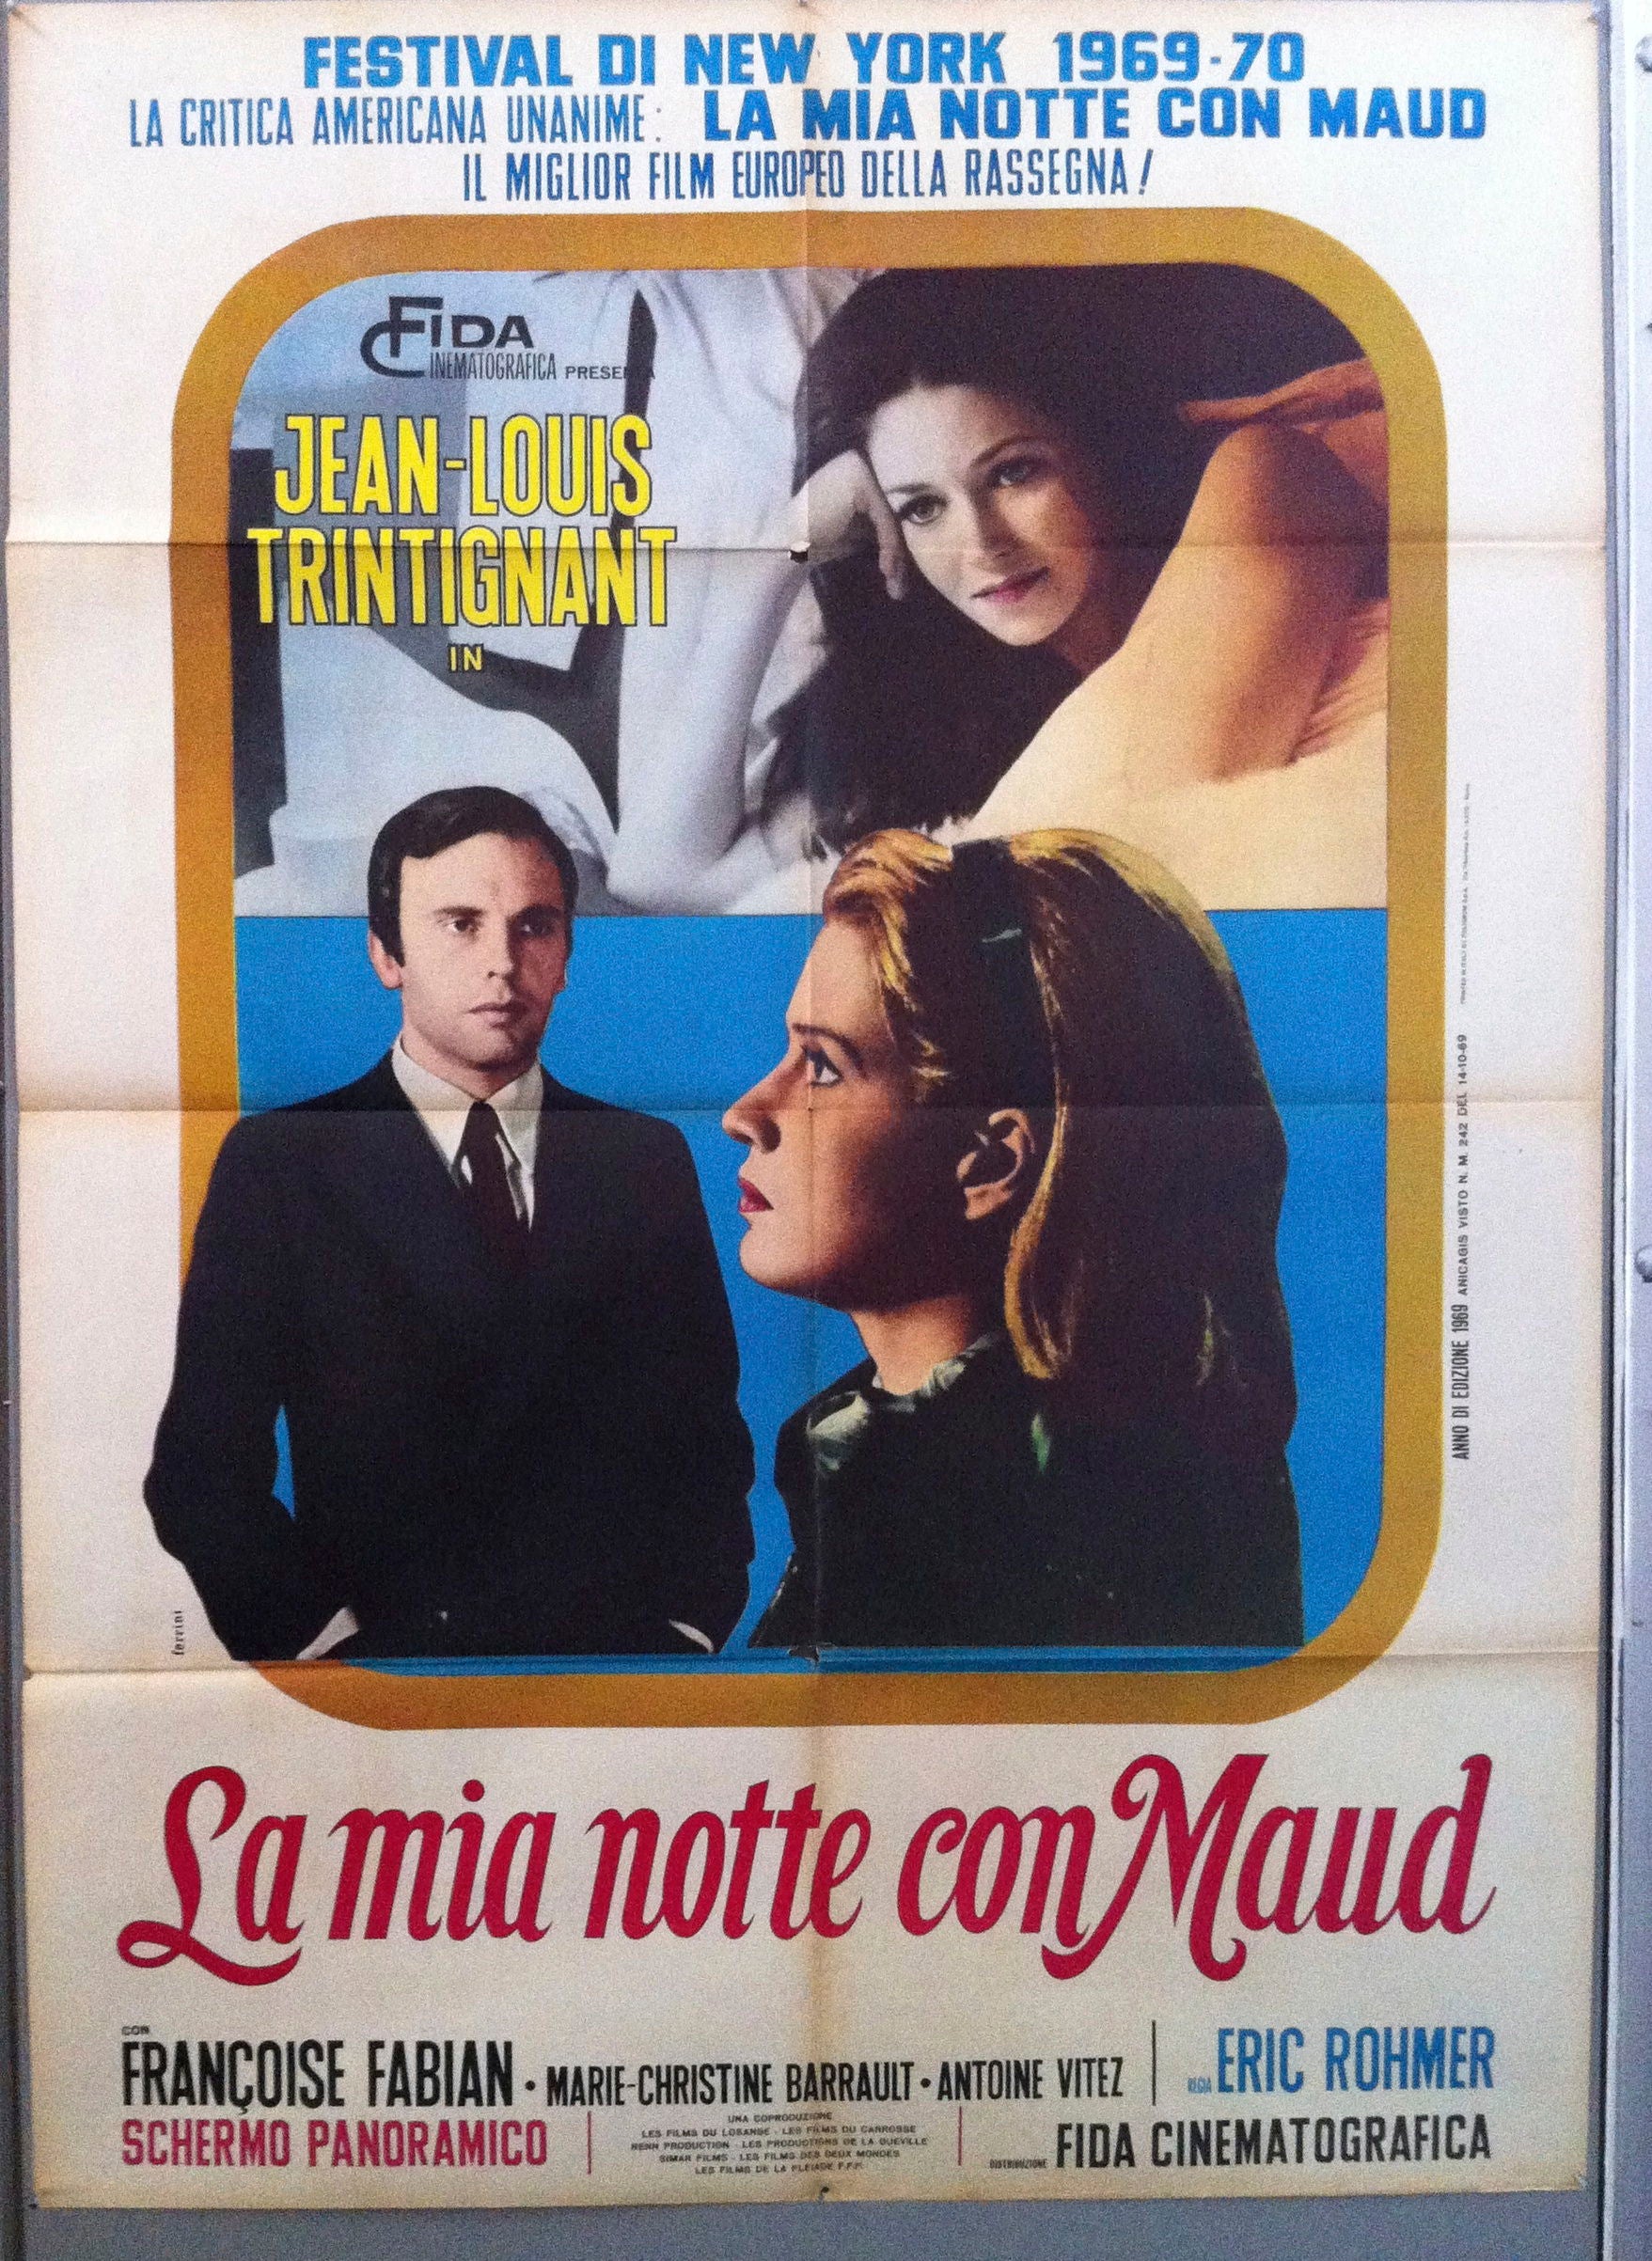 La Mia Notte con Maud – Poster Museum